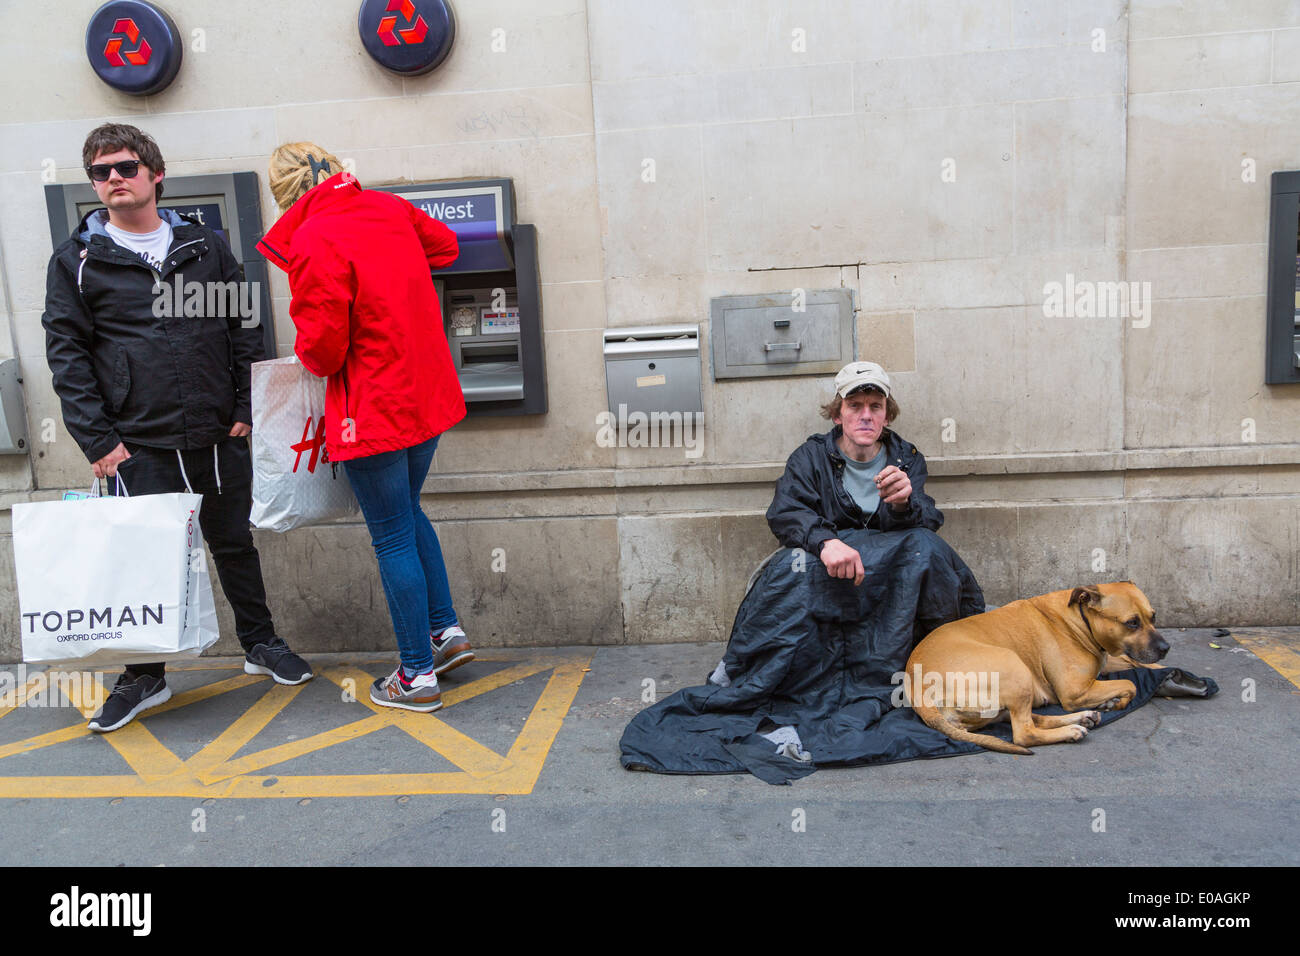 Les jeunes du millénaire retirent de l'argent à un guichet automatique tandis qu'un homme sans domicile et son chien sont assis à proximité en suppliant pour de l'argent, Londres Angleterre Royaume-Uni Banque D'Images